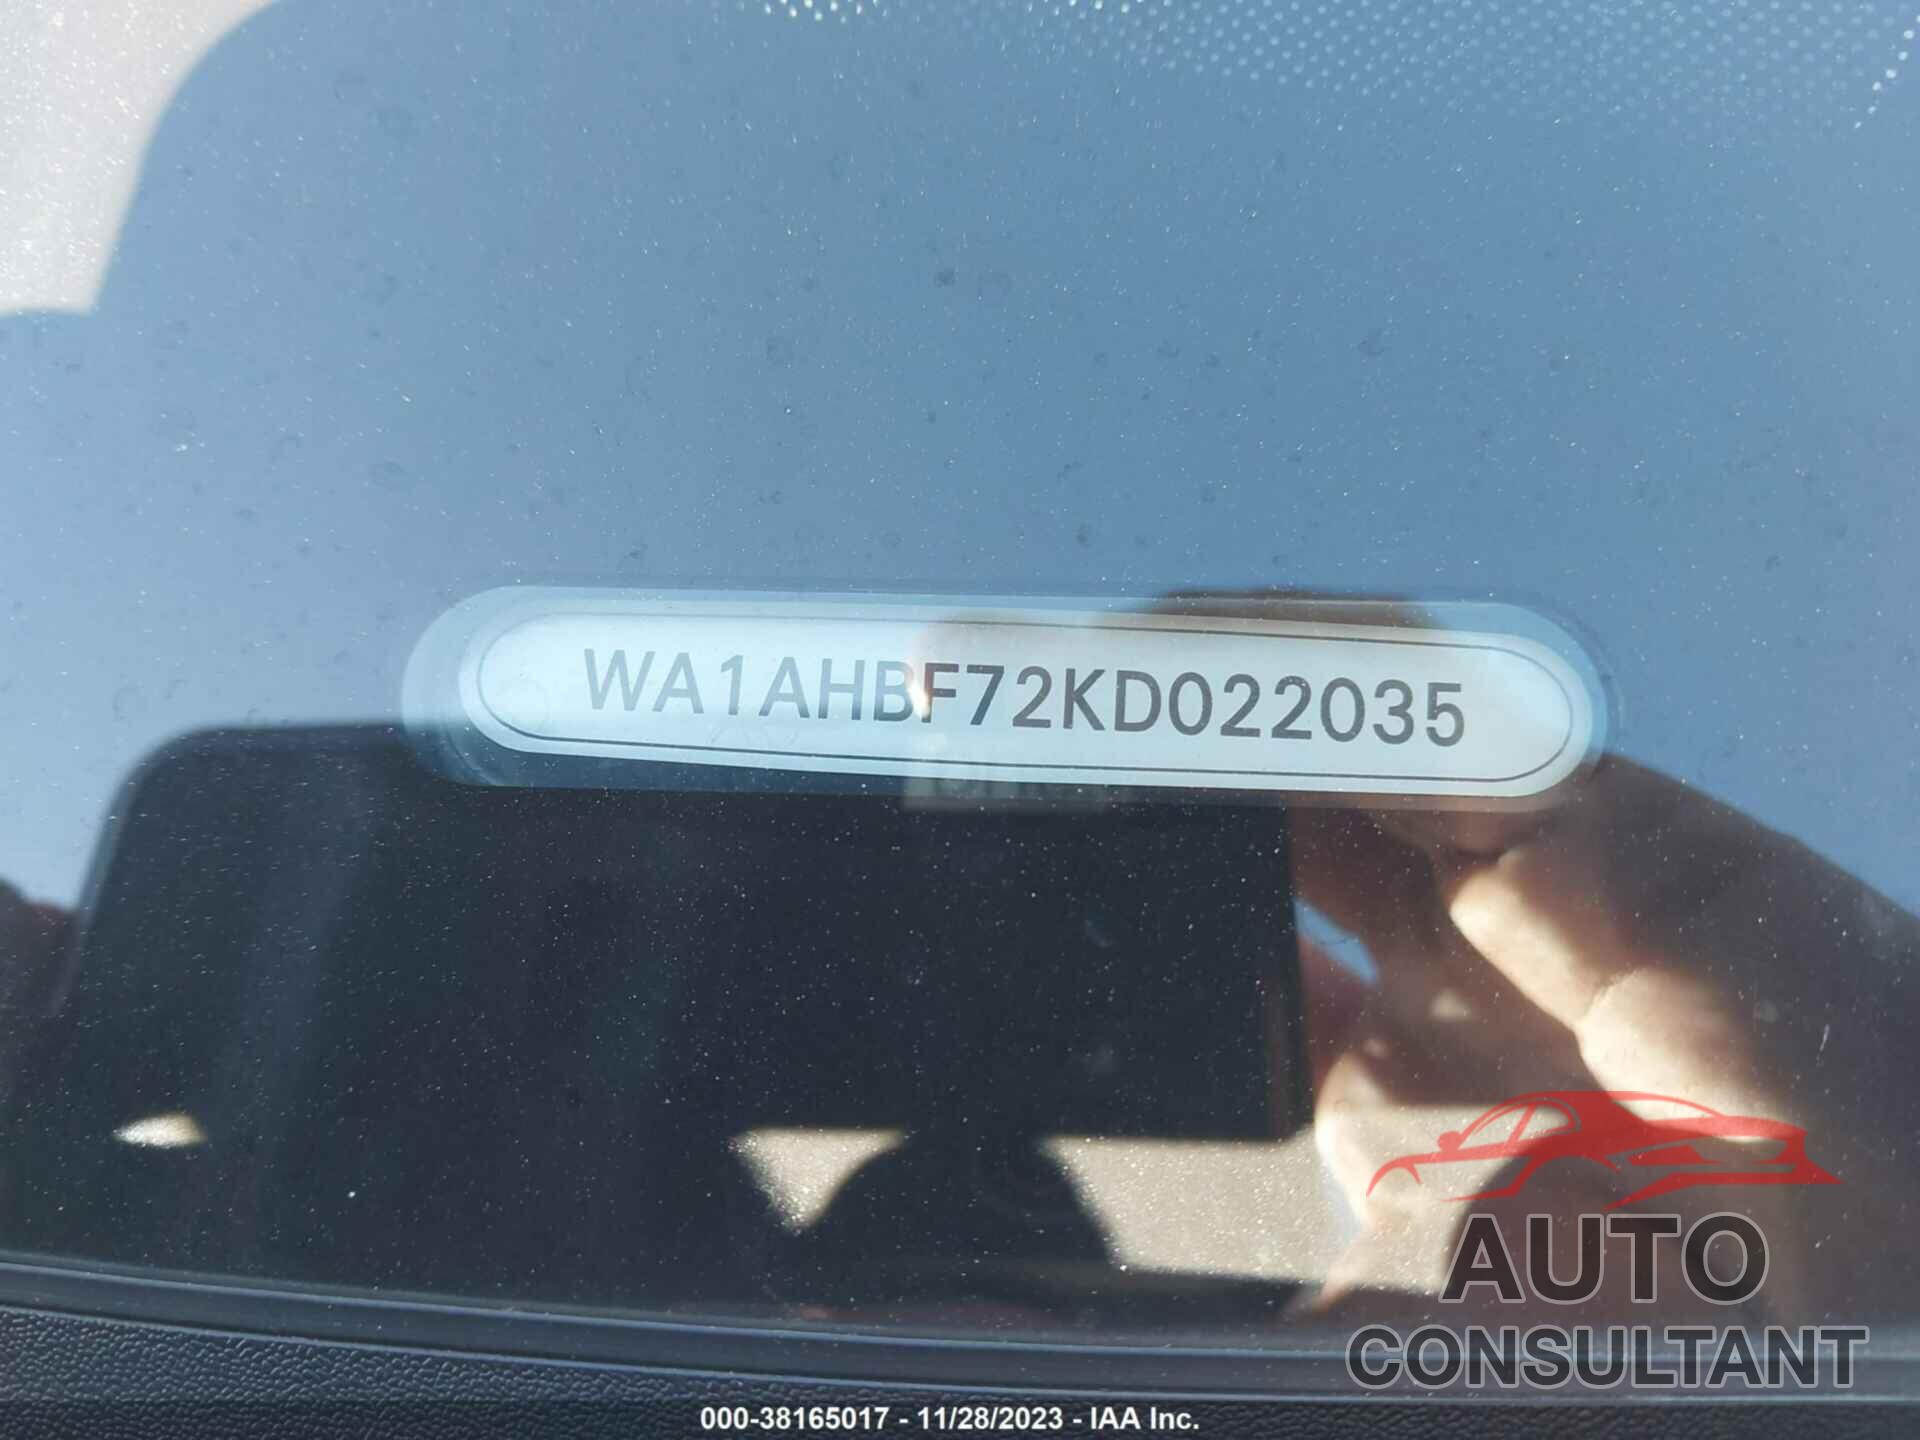 AUDI Q7 2019 - WA1AHBF72KD022035